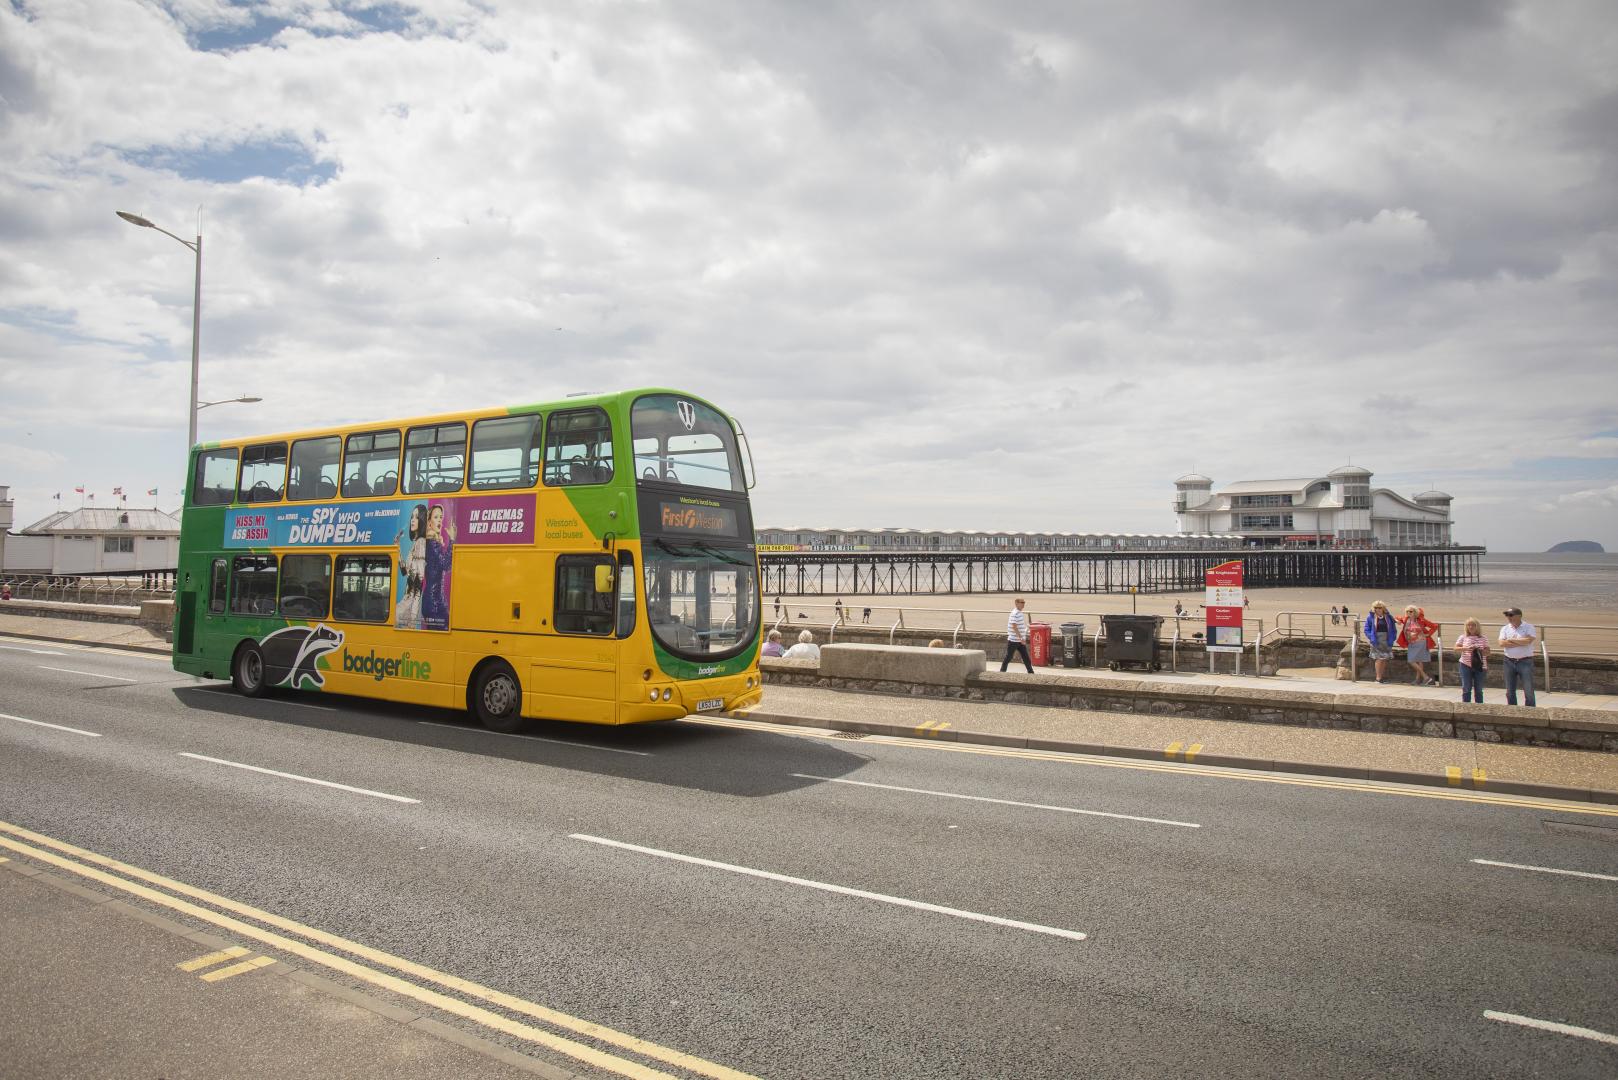 X1 Bus in front of pier